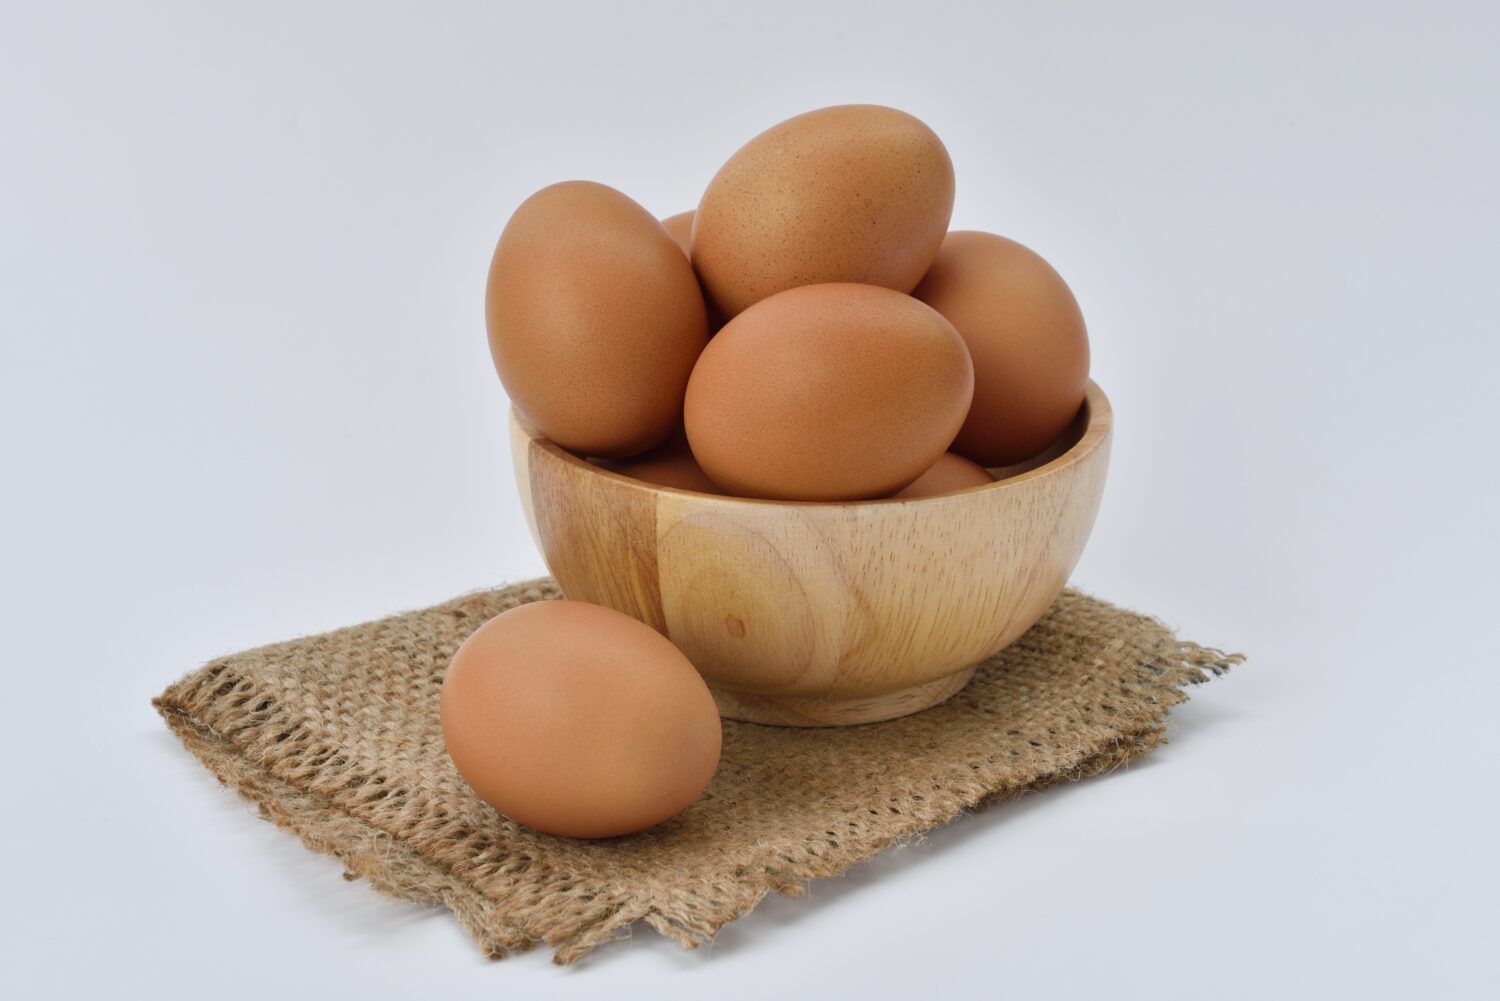 importancia del huevo en la alimentacion